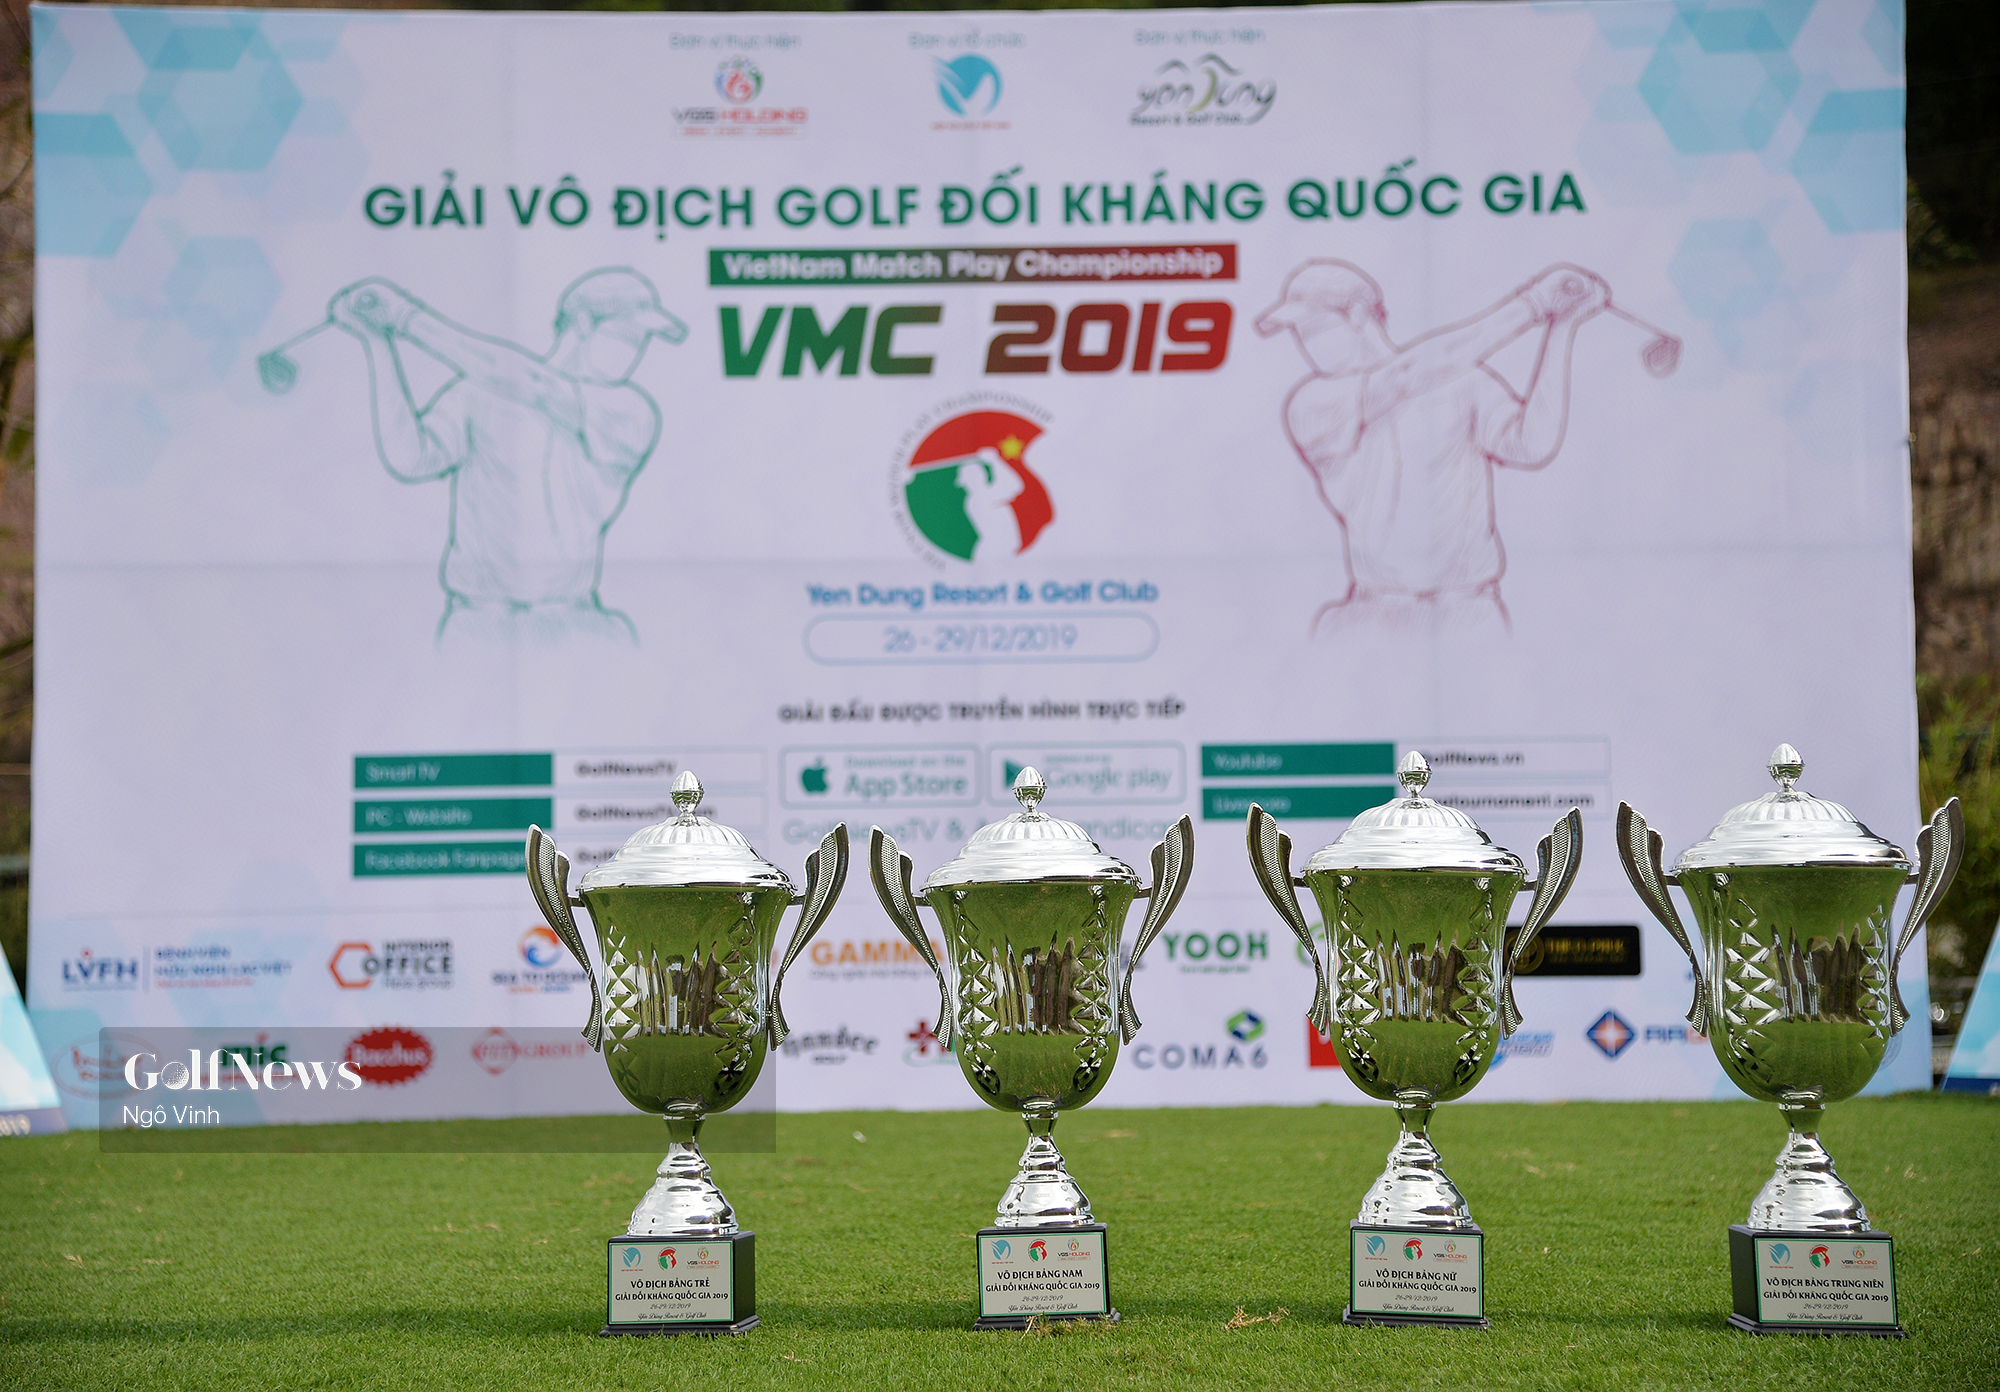 Ai sẽ là chủ nhân của những chiếc cúp VMC 2019